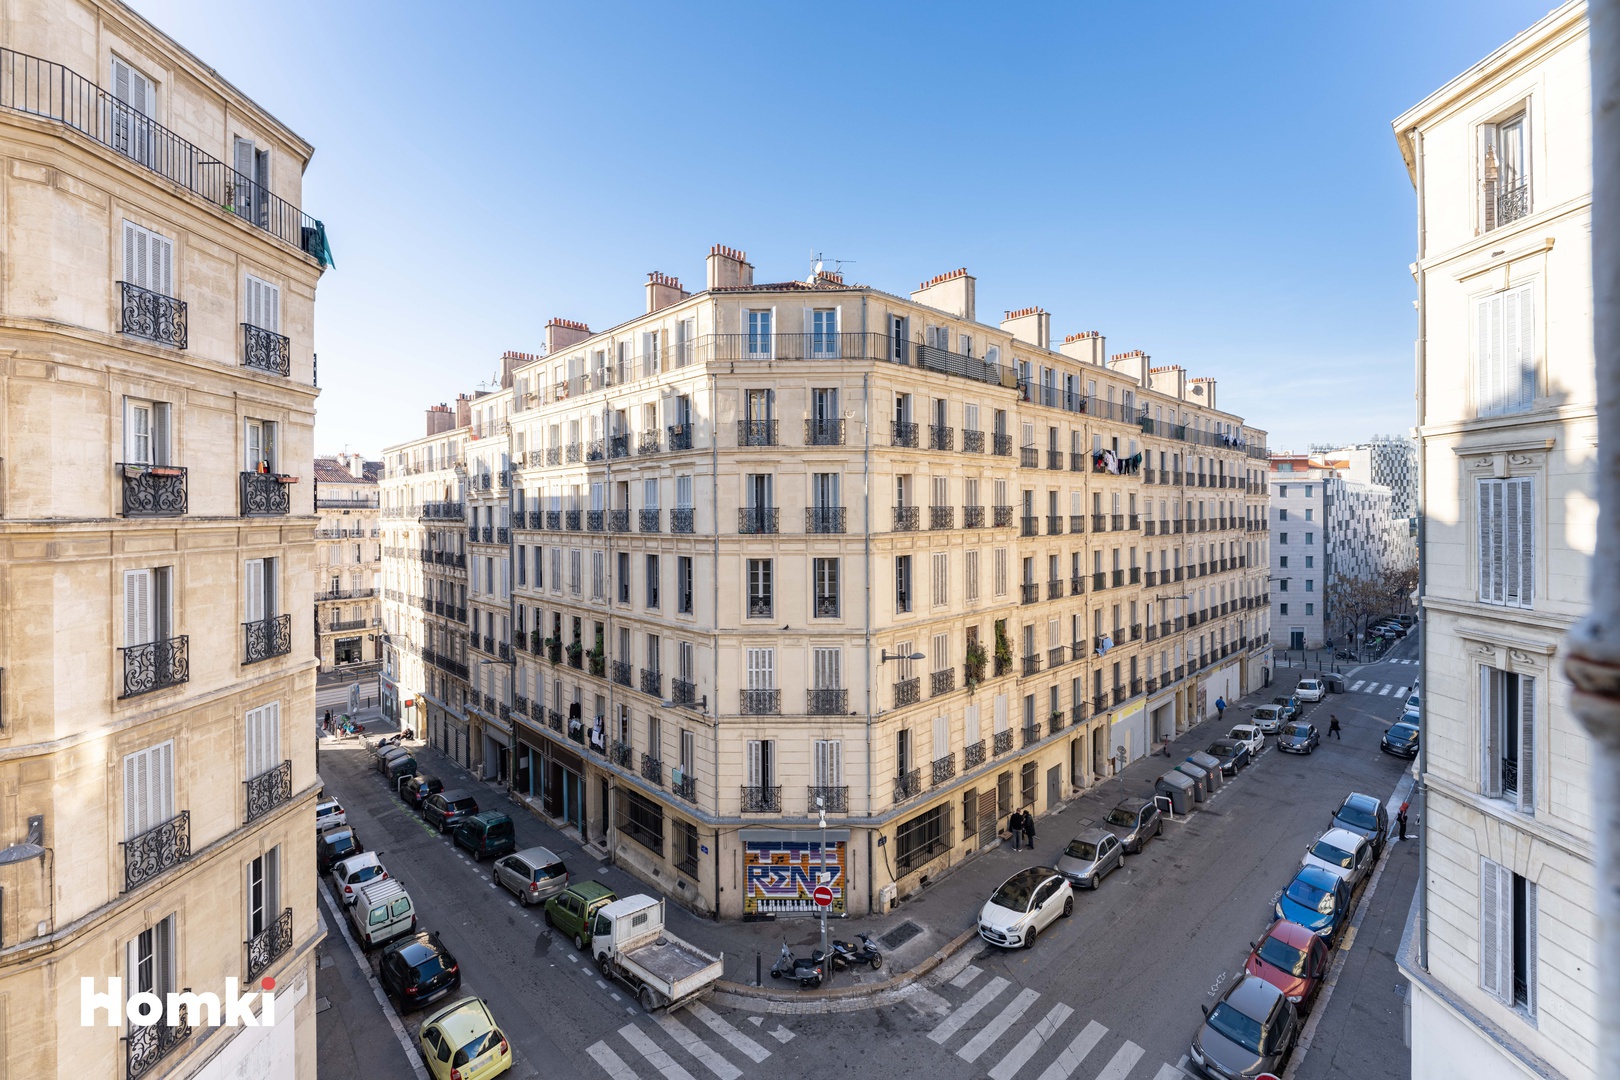 Homki - Vente Appartement  de 62.0 m² à Marseille 13002